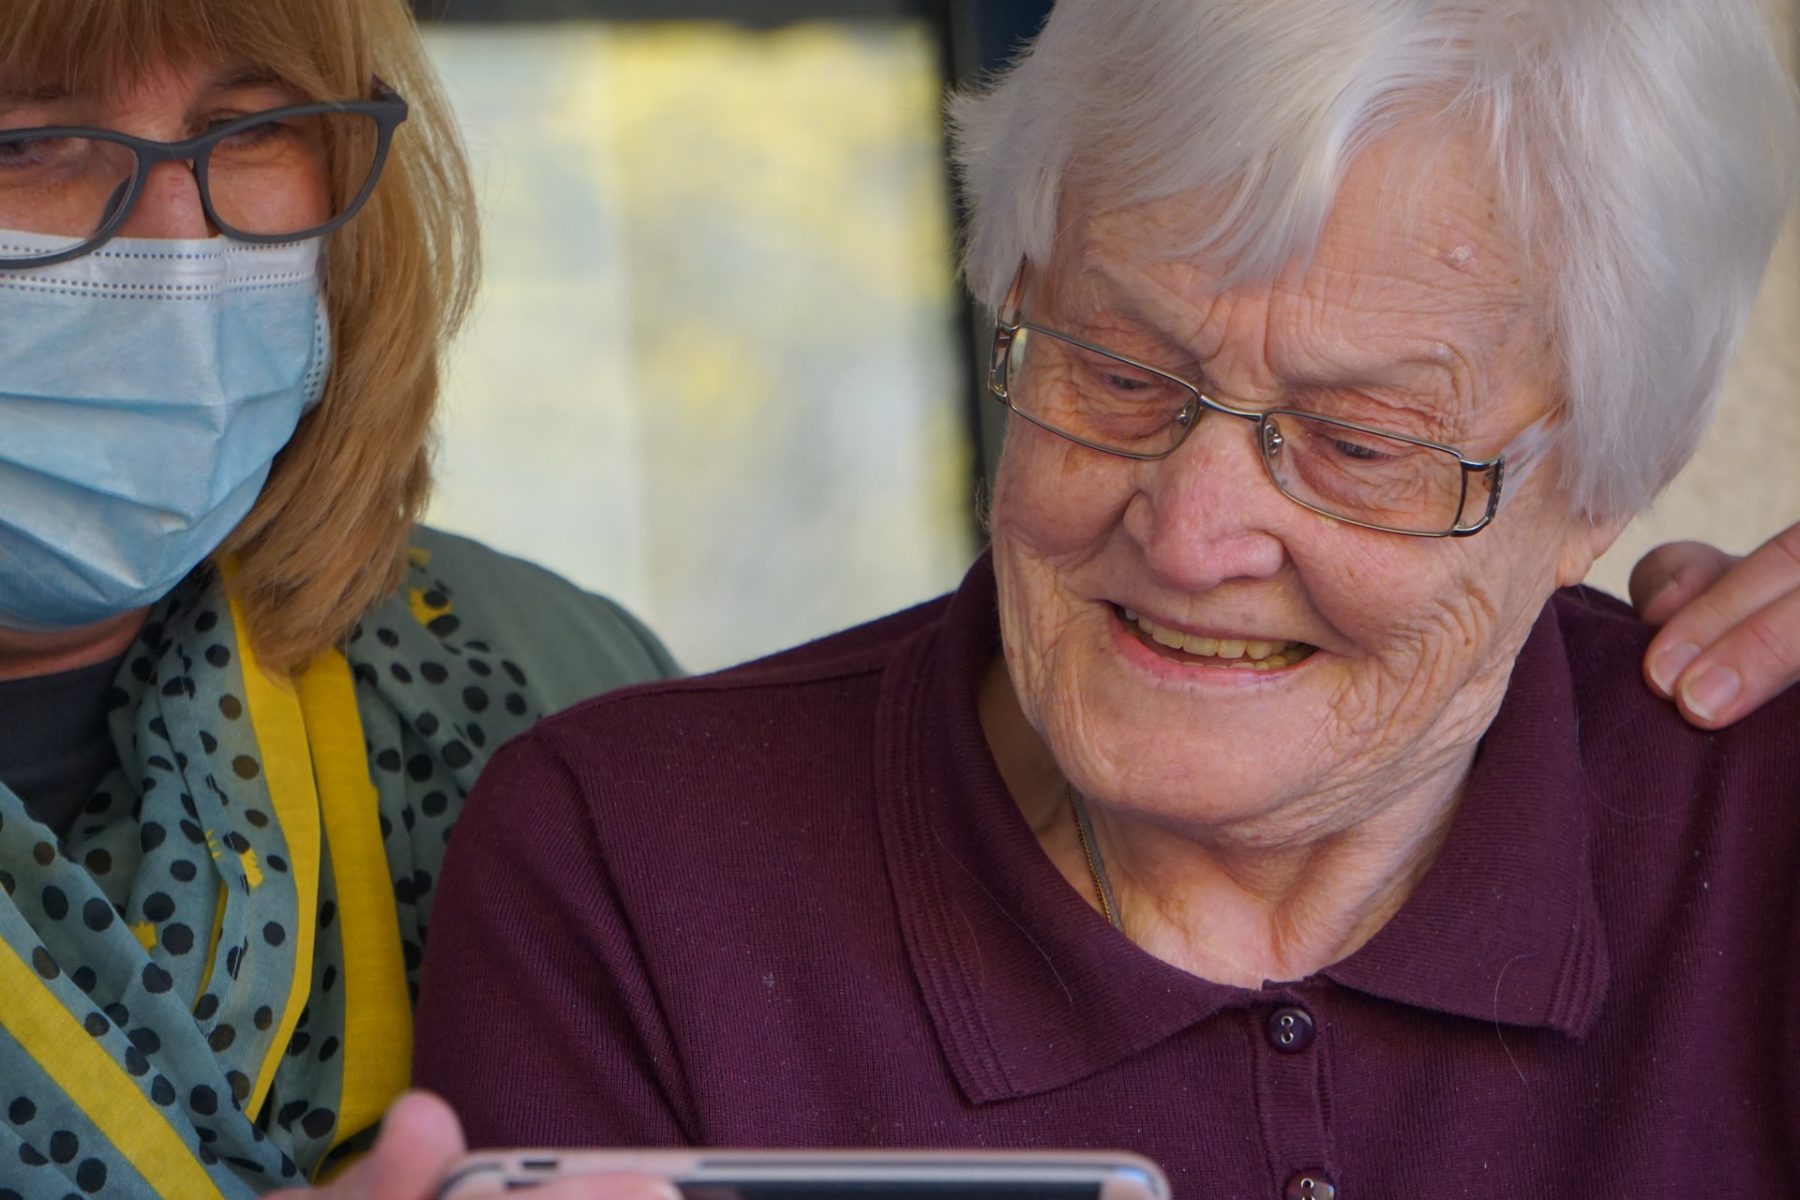 Ηλικιωμένοι τεχνολογία άνοια: Η χρήση ψηφιακών βοηθημάτων μνήμης κάνει την καθημερινότητα πιο εύκολη